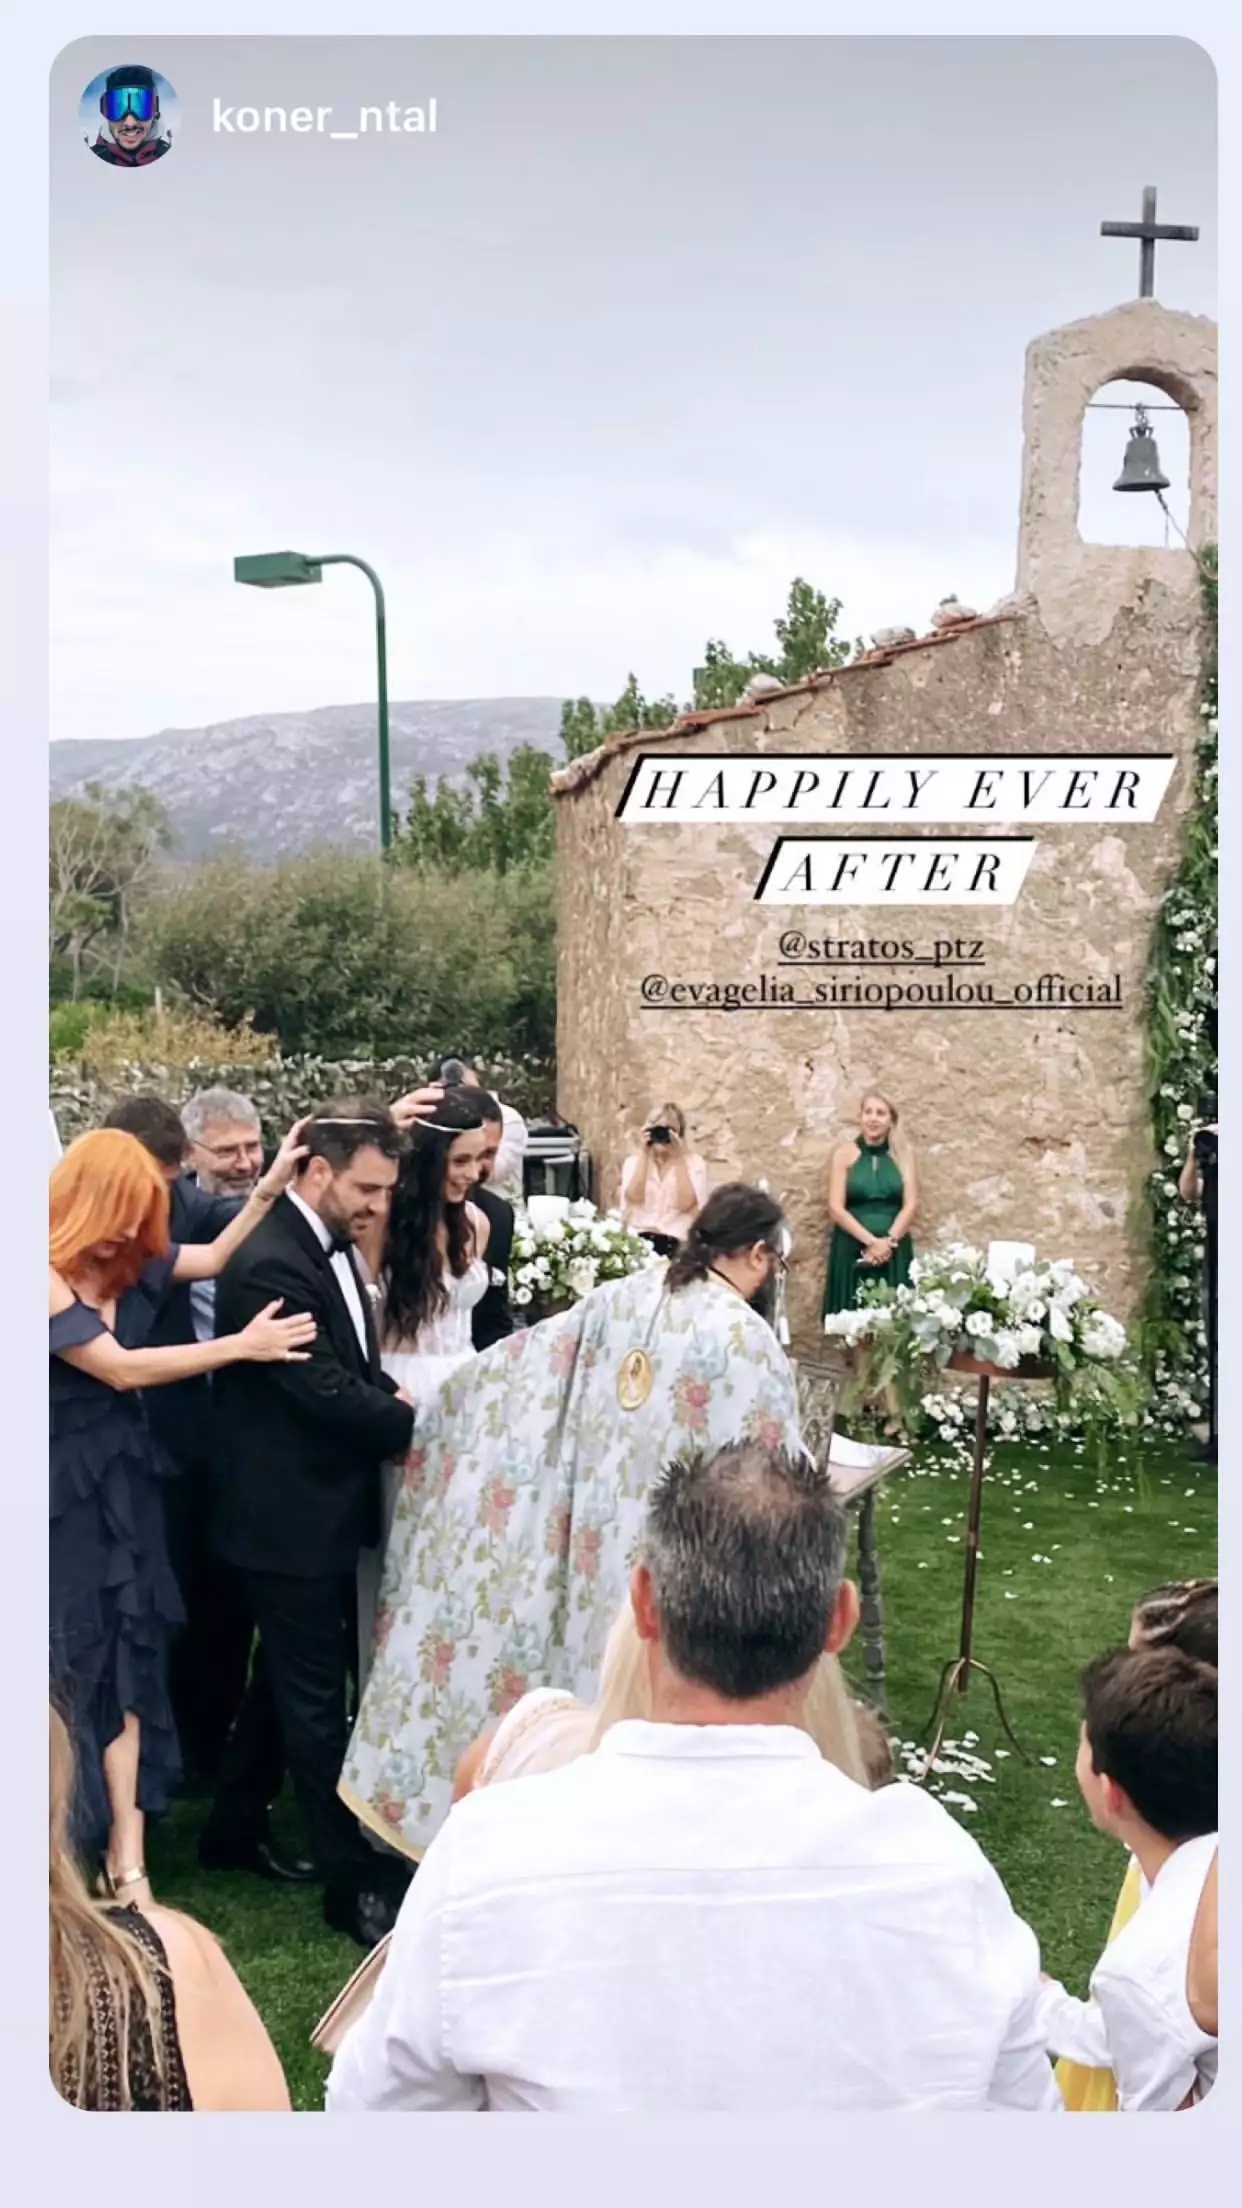 Η Ευαγγελία Συριοπούλου μόλις παντρεύτηκε! Καρύδη-Αθερίδης-Μαρίνος οι κουμπάροι (εικόνες)